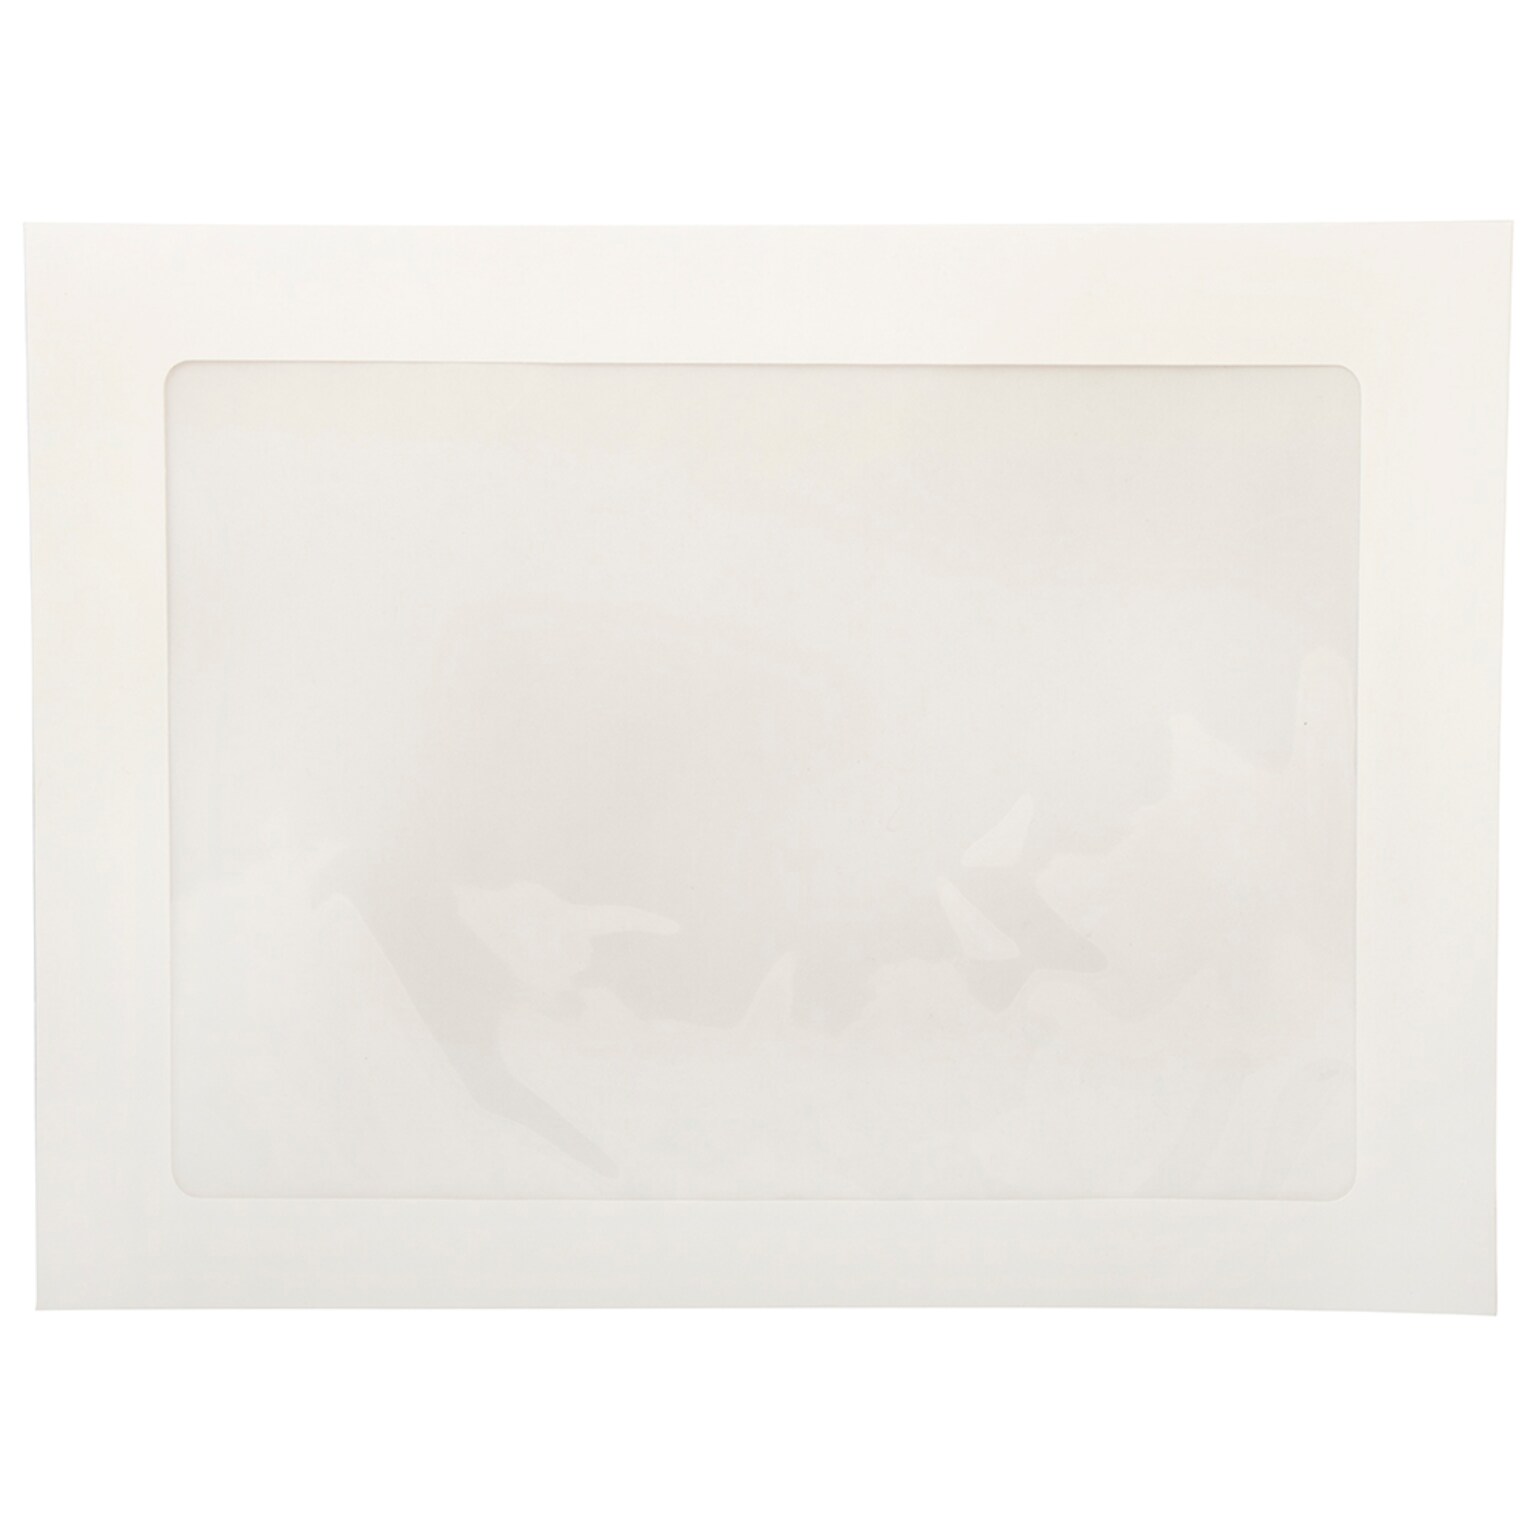 JAM Paper Window Envelope, 9 x 12, White, 25/Pack (223932)